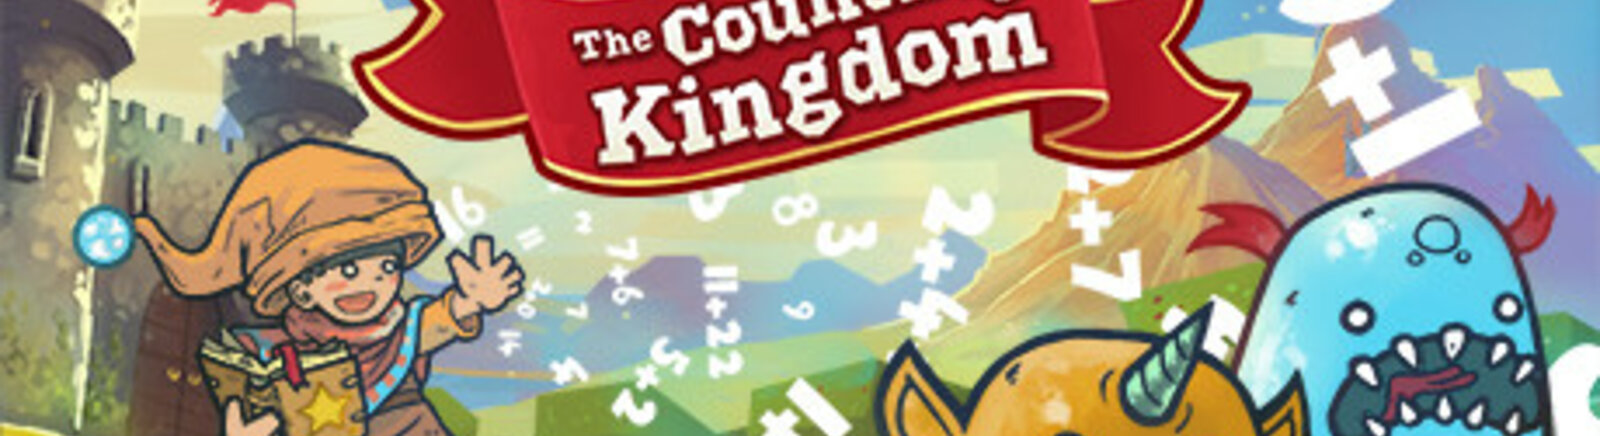 Дата выхода The Counting Kingdom  на PC, iOS и Mac в России и во всем мире